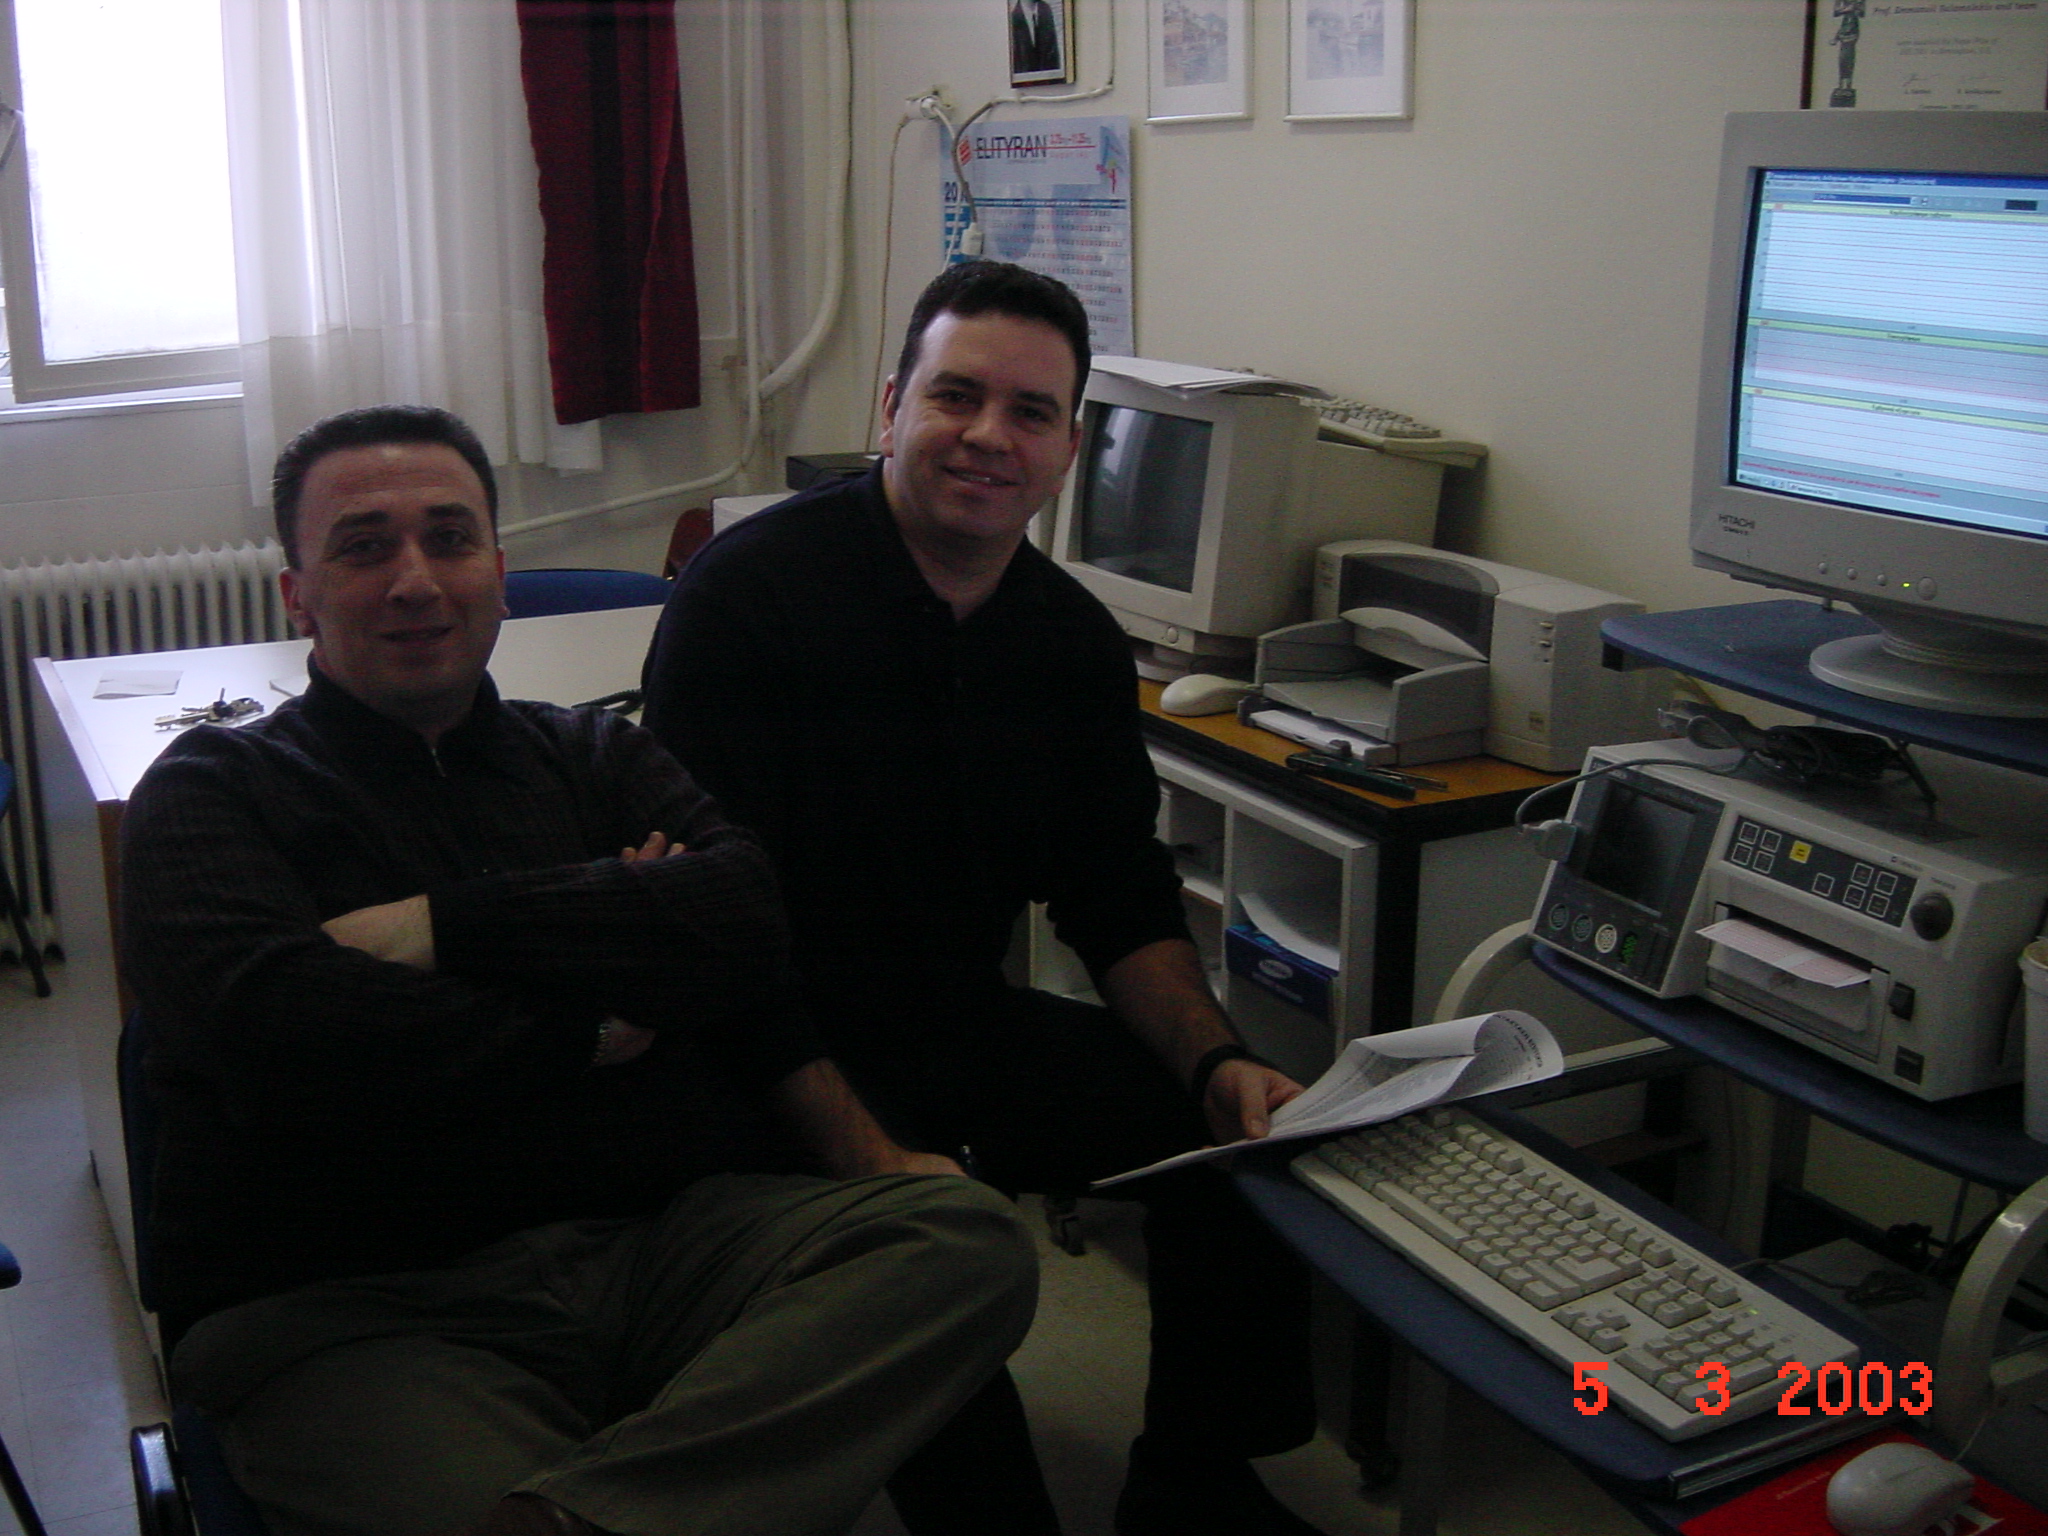 Με τον καλό συνάδελφο Ιωάννη Σαλλούμ, στο πρότυπο σύστημα επιτήρησης του εμβρύου, Αρεταίειο Νοσοκομείο, 2003